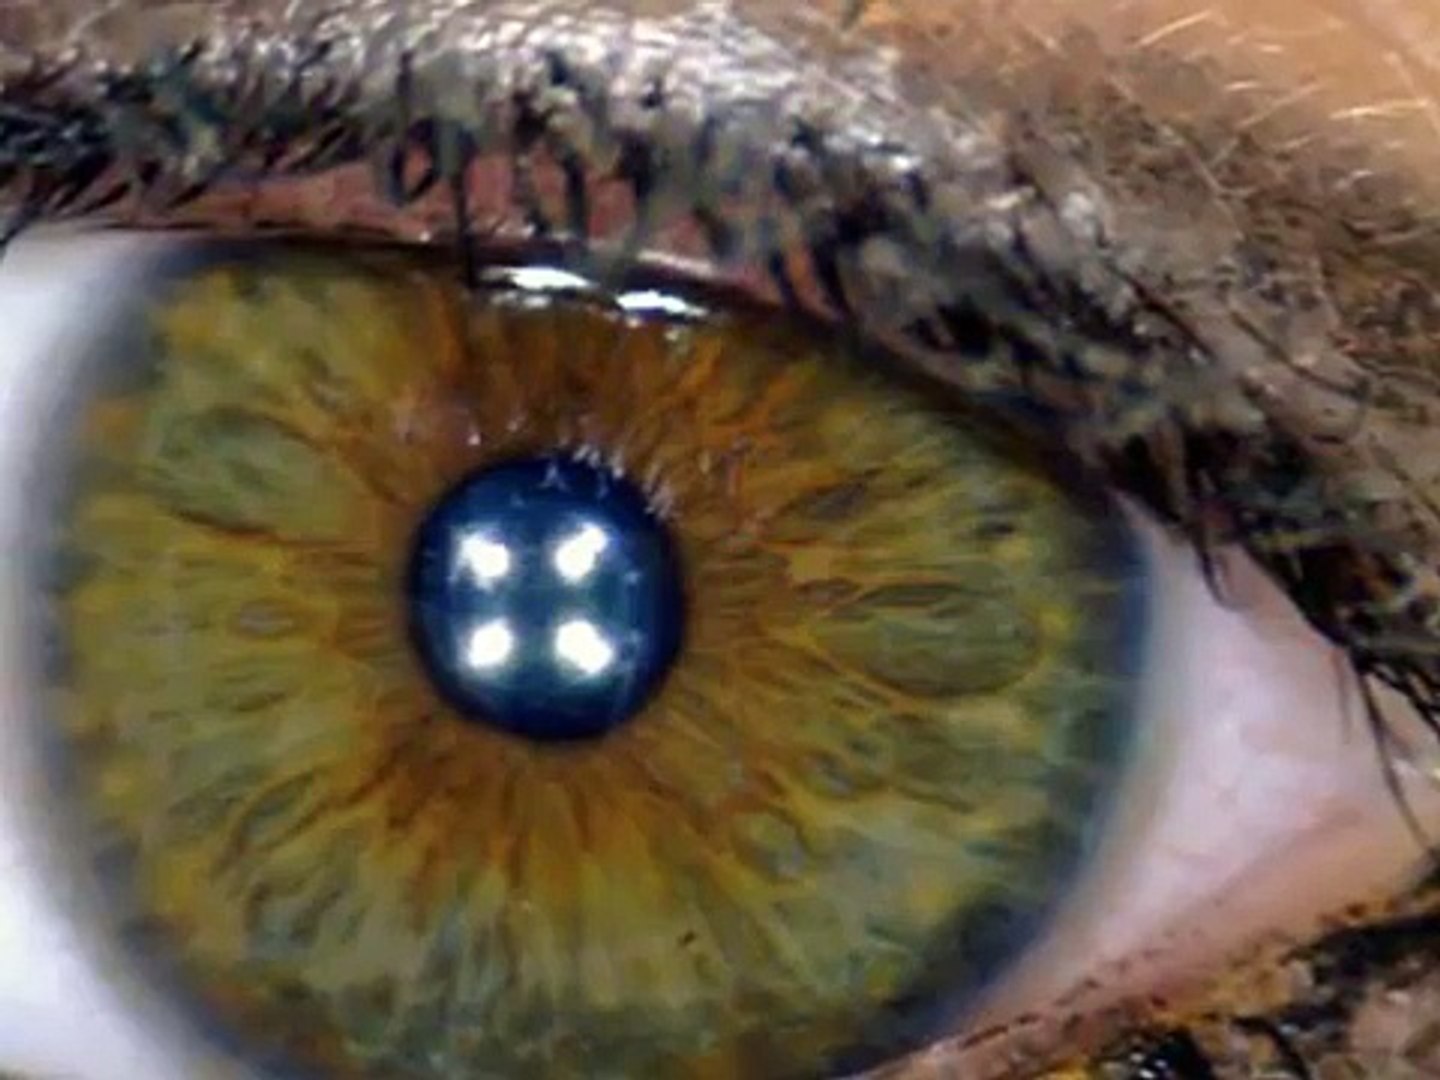 Occhi,lingua,picce e punti neri visti al microscopio - video Dailymotion